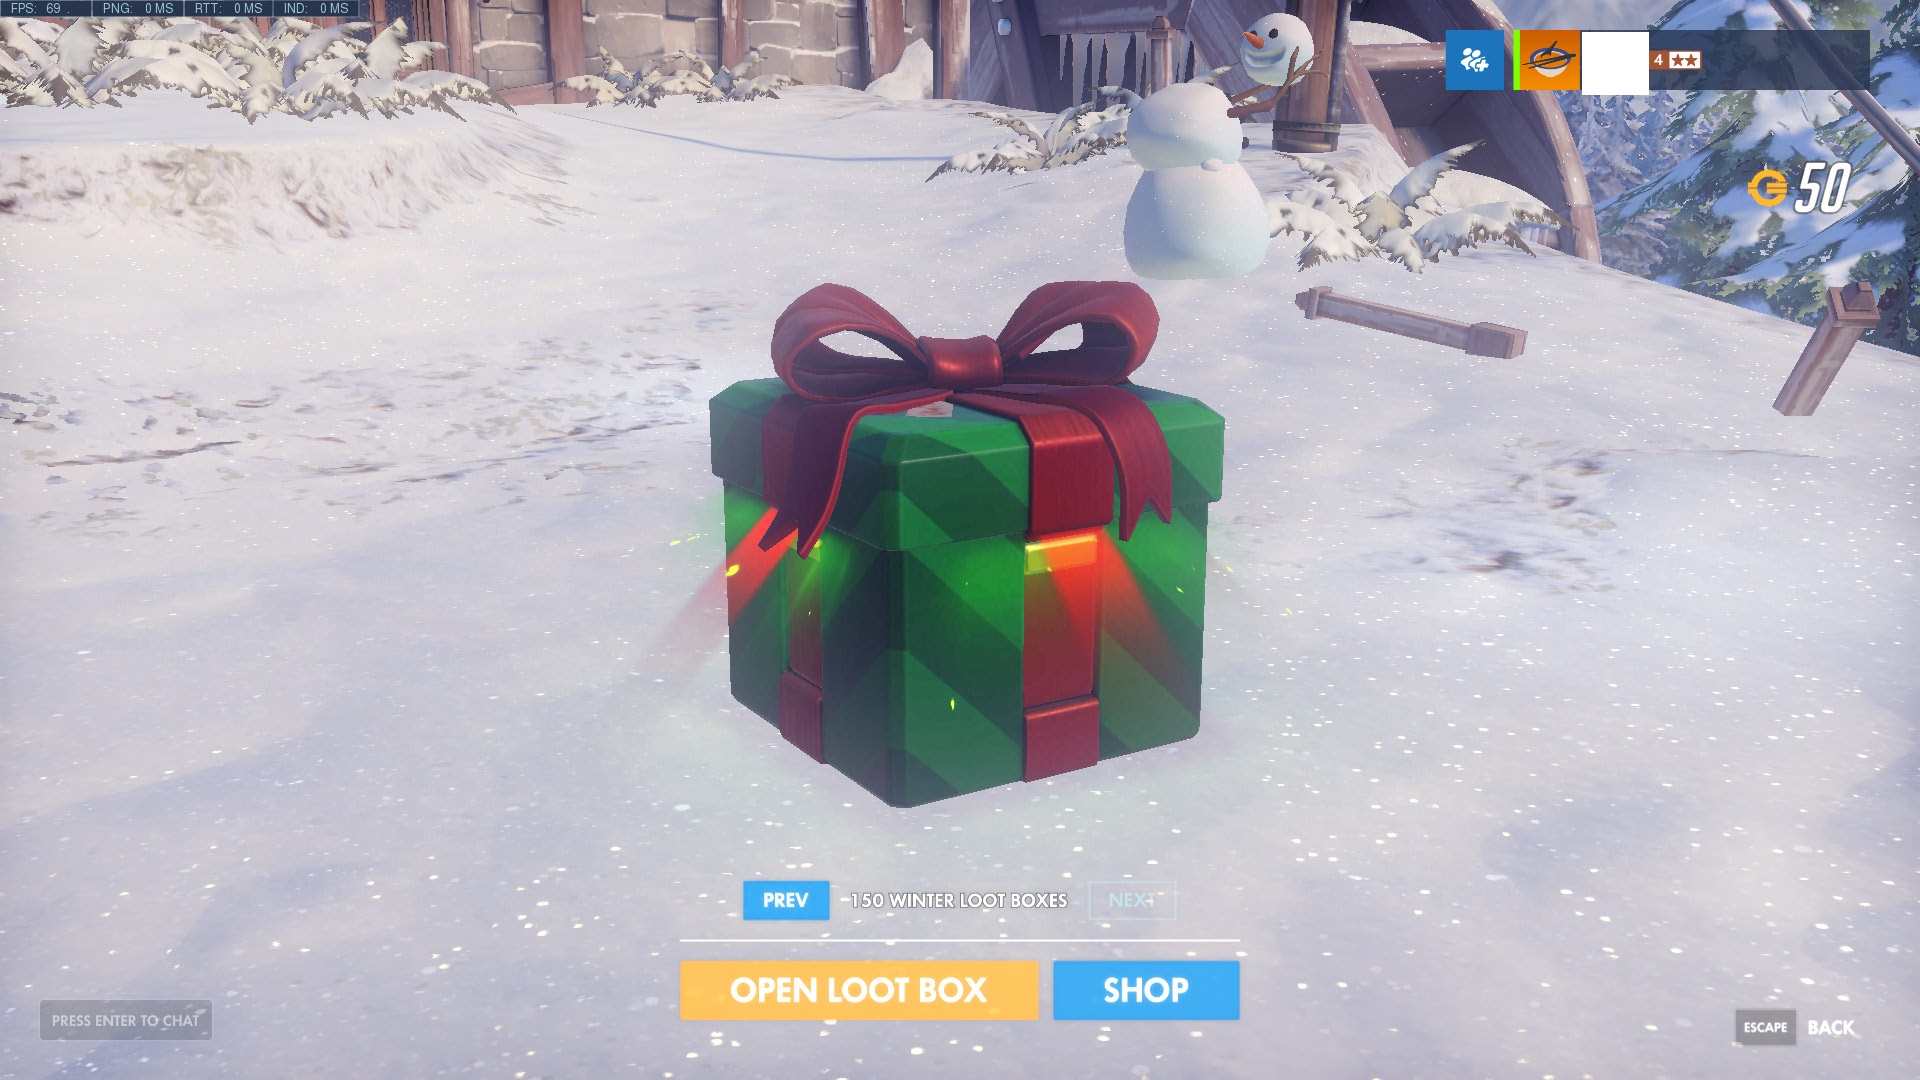 Overwatch and Loot Boxes 25% off Bnet Shop (Battle.net Shop Gift)-screenshot_17-12-19_17-35-47-000-jpg